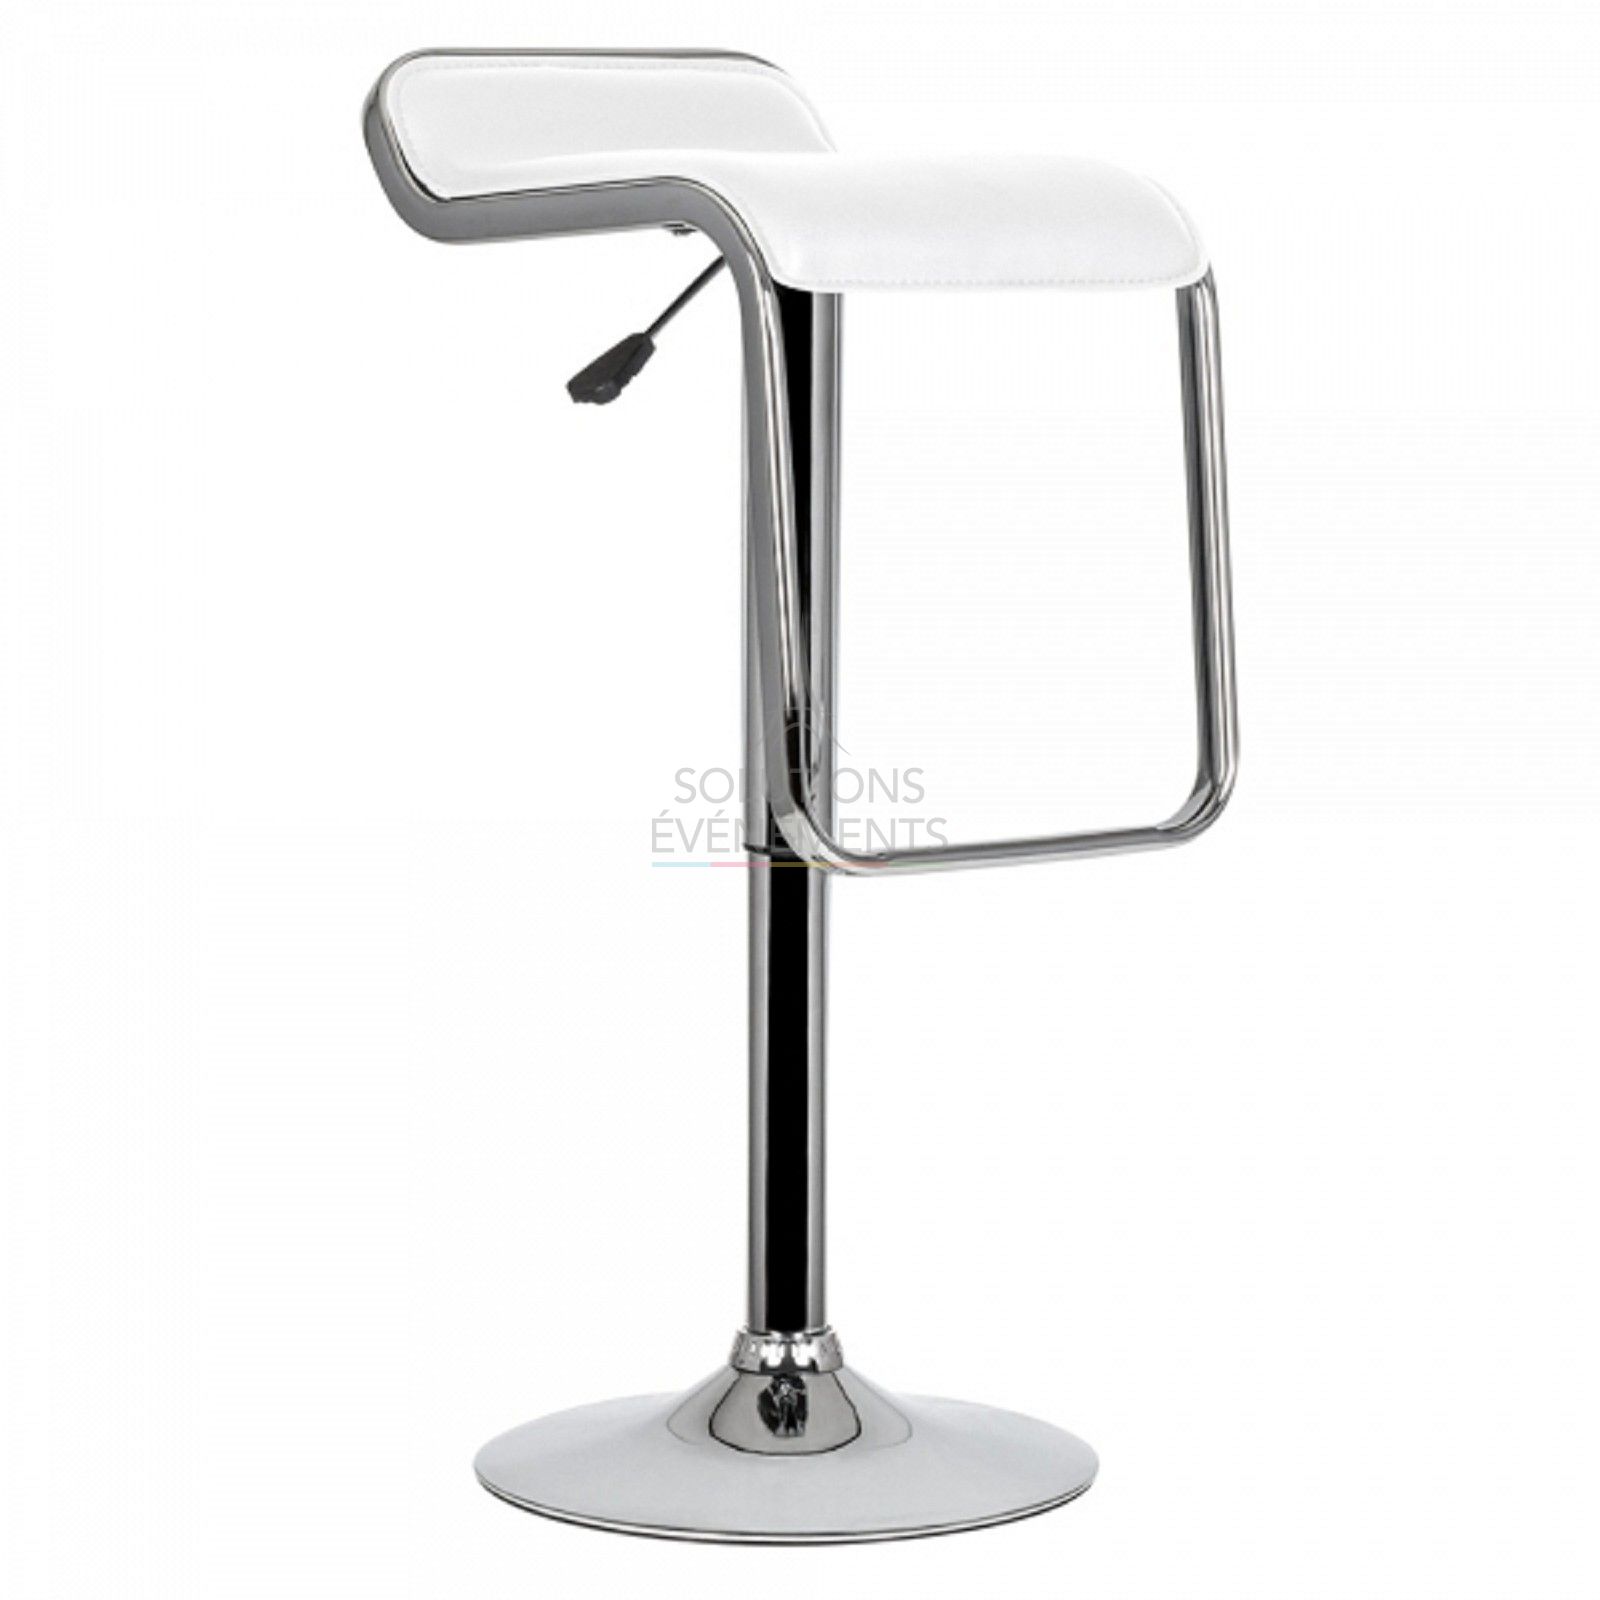 Rental of white bar stool